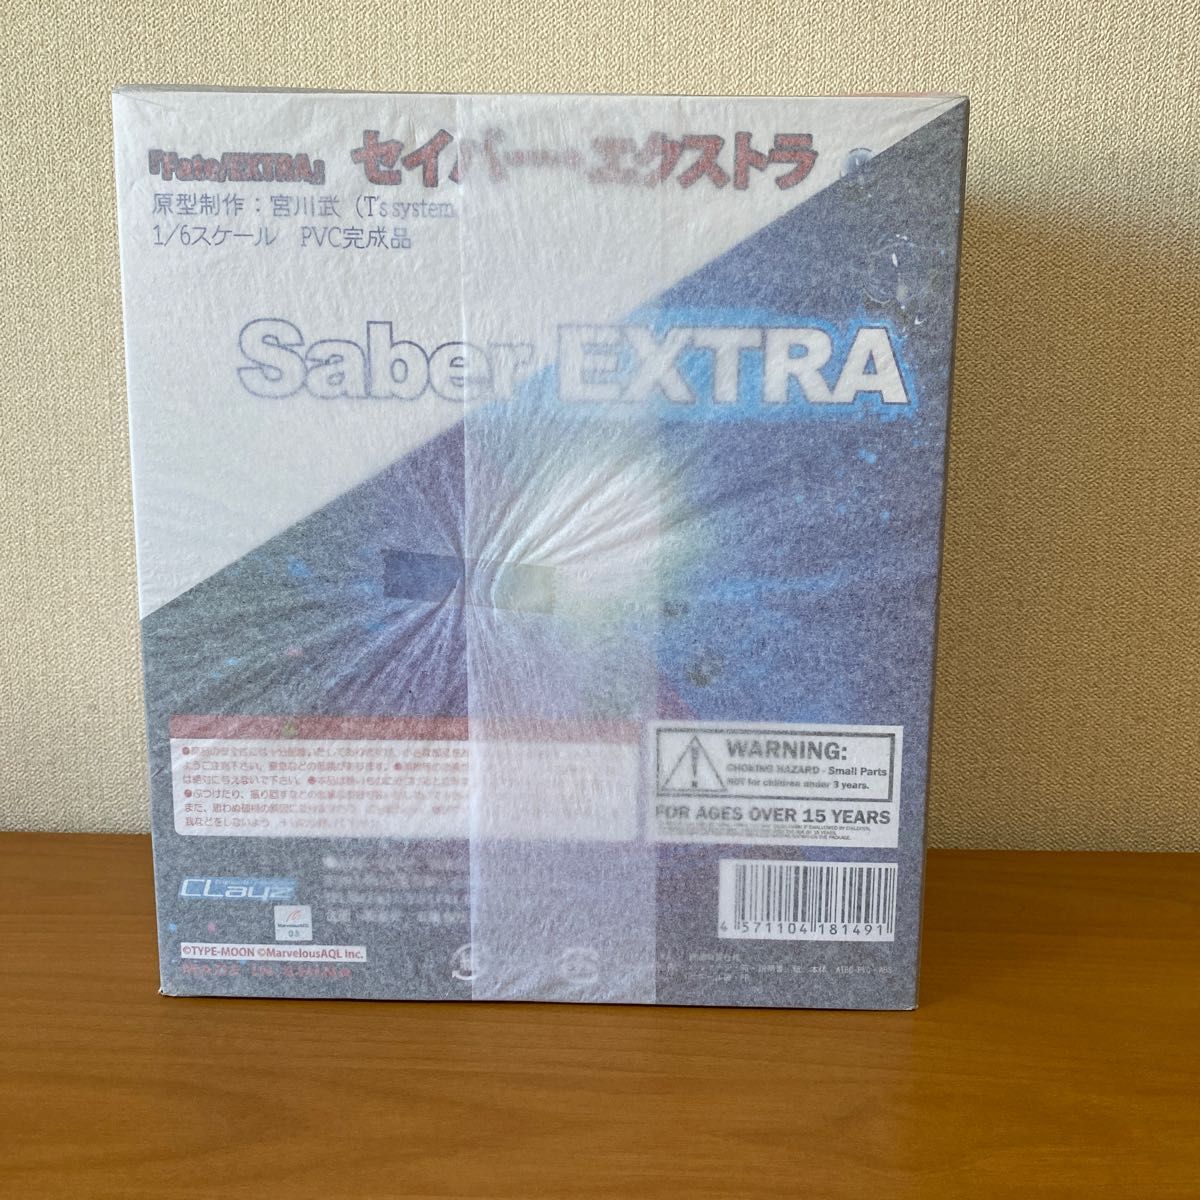 Fate/Extra セイバーエクストラ (1/6スケール PVC塗装済完成品) 